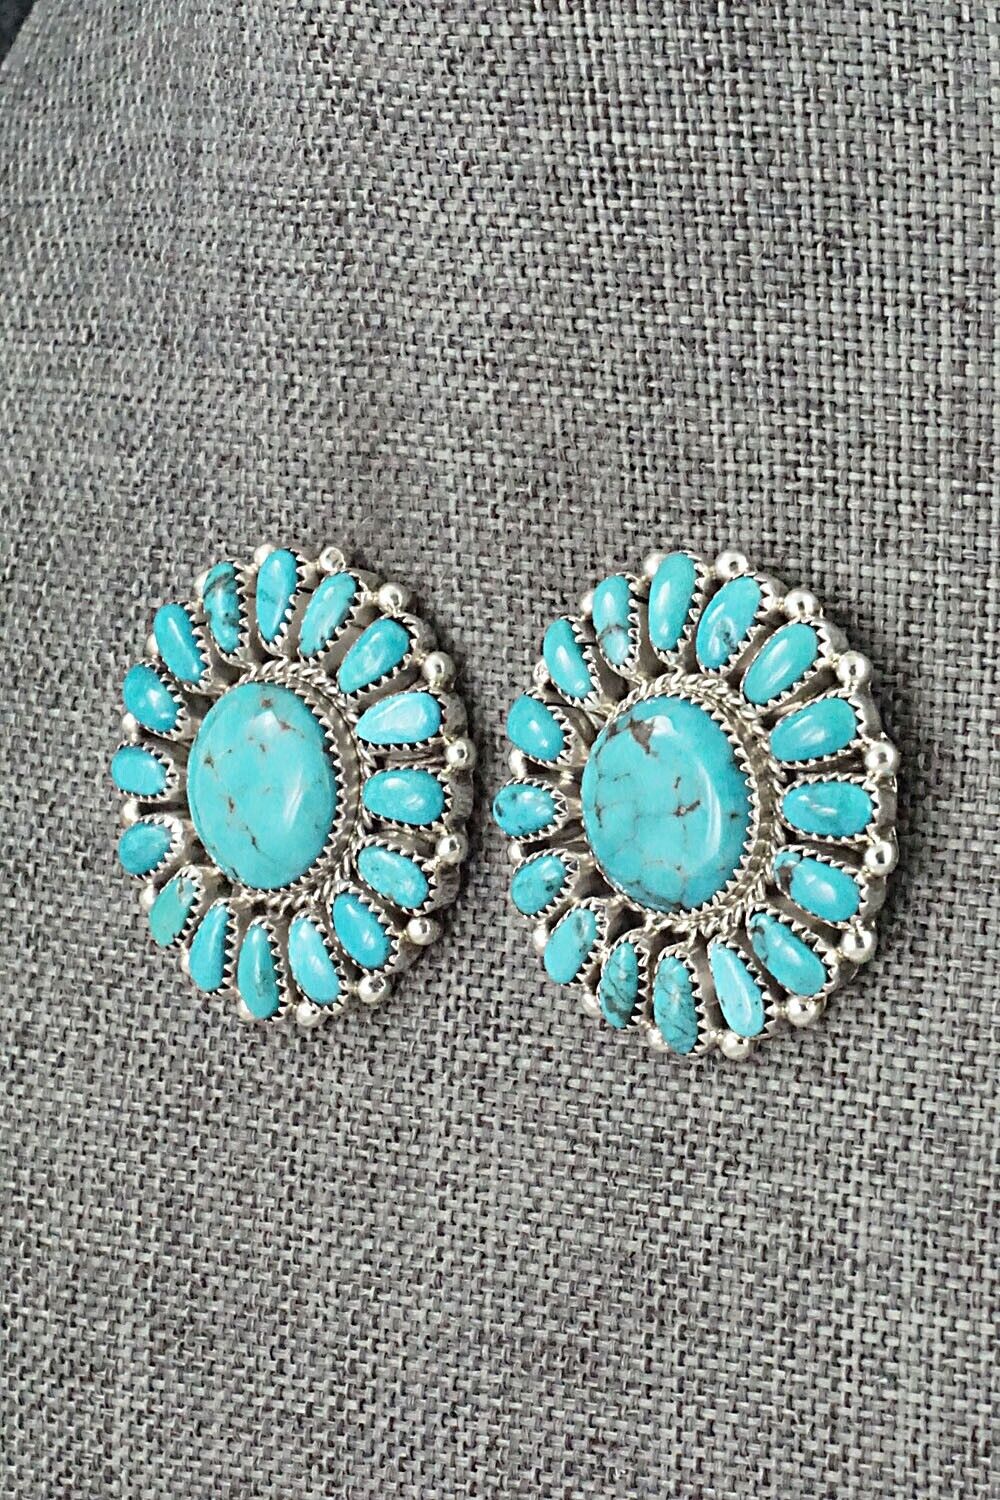 Turquoise & Sterling Silver Earrings - Jaz Wilson